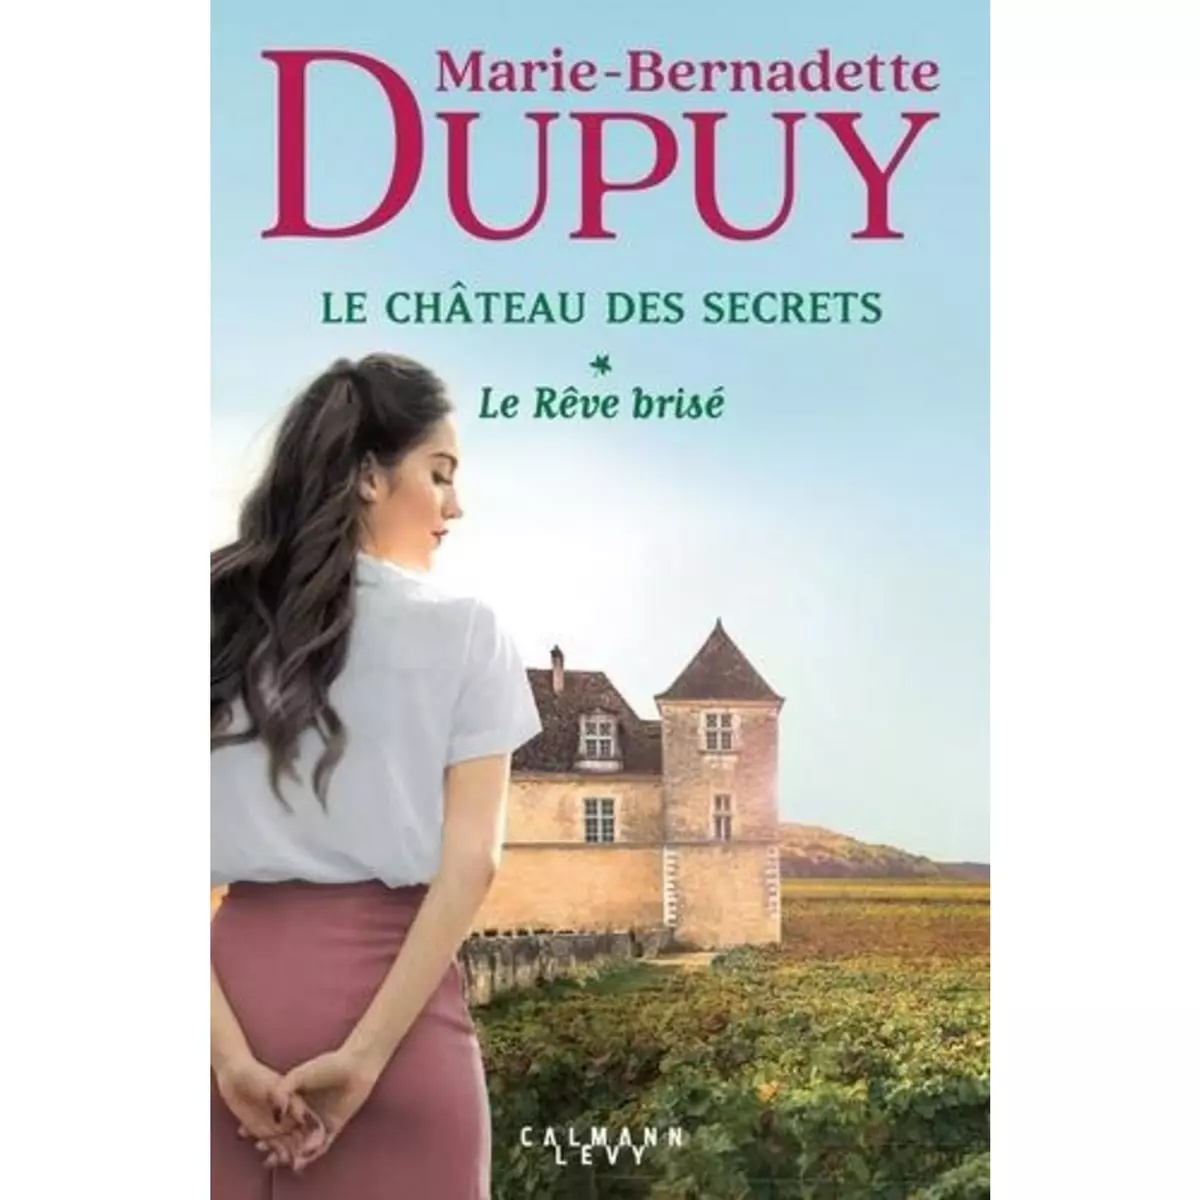  LE CHATEAU DES SECRETS TOME 1 : LE REVE BRISE, Dupuy Marie-Bernadette